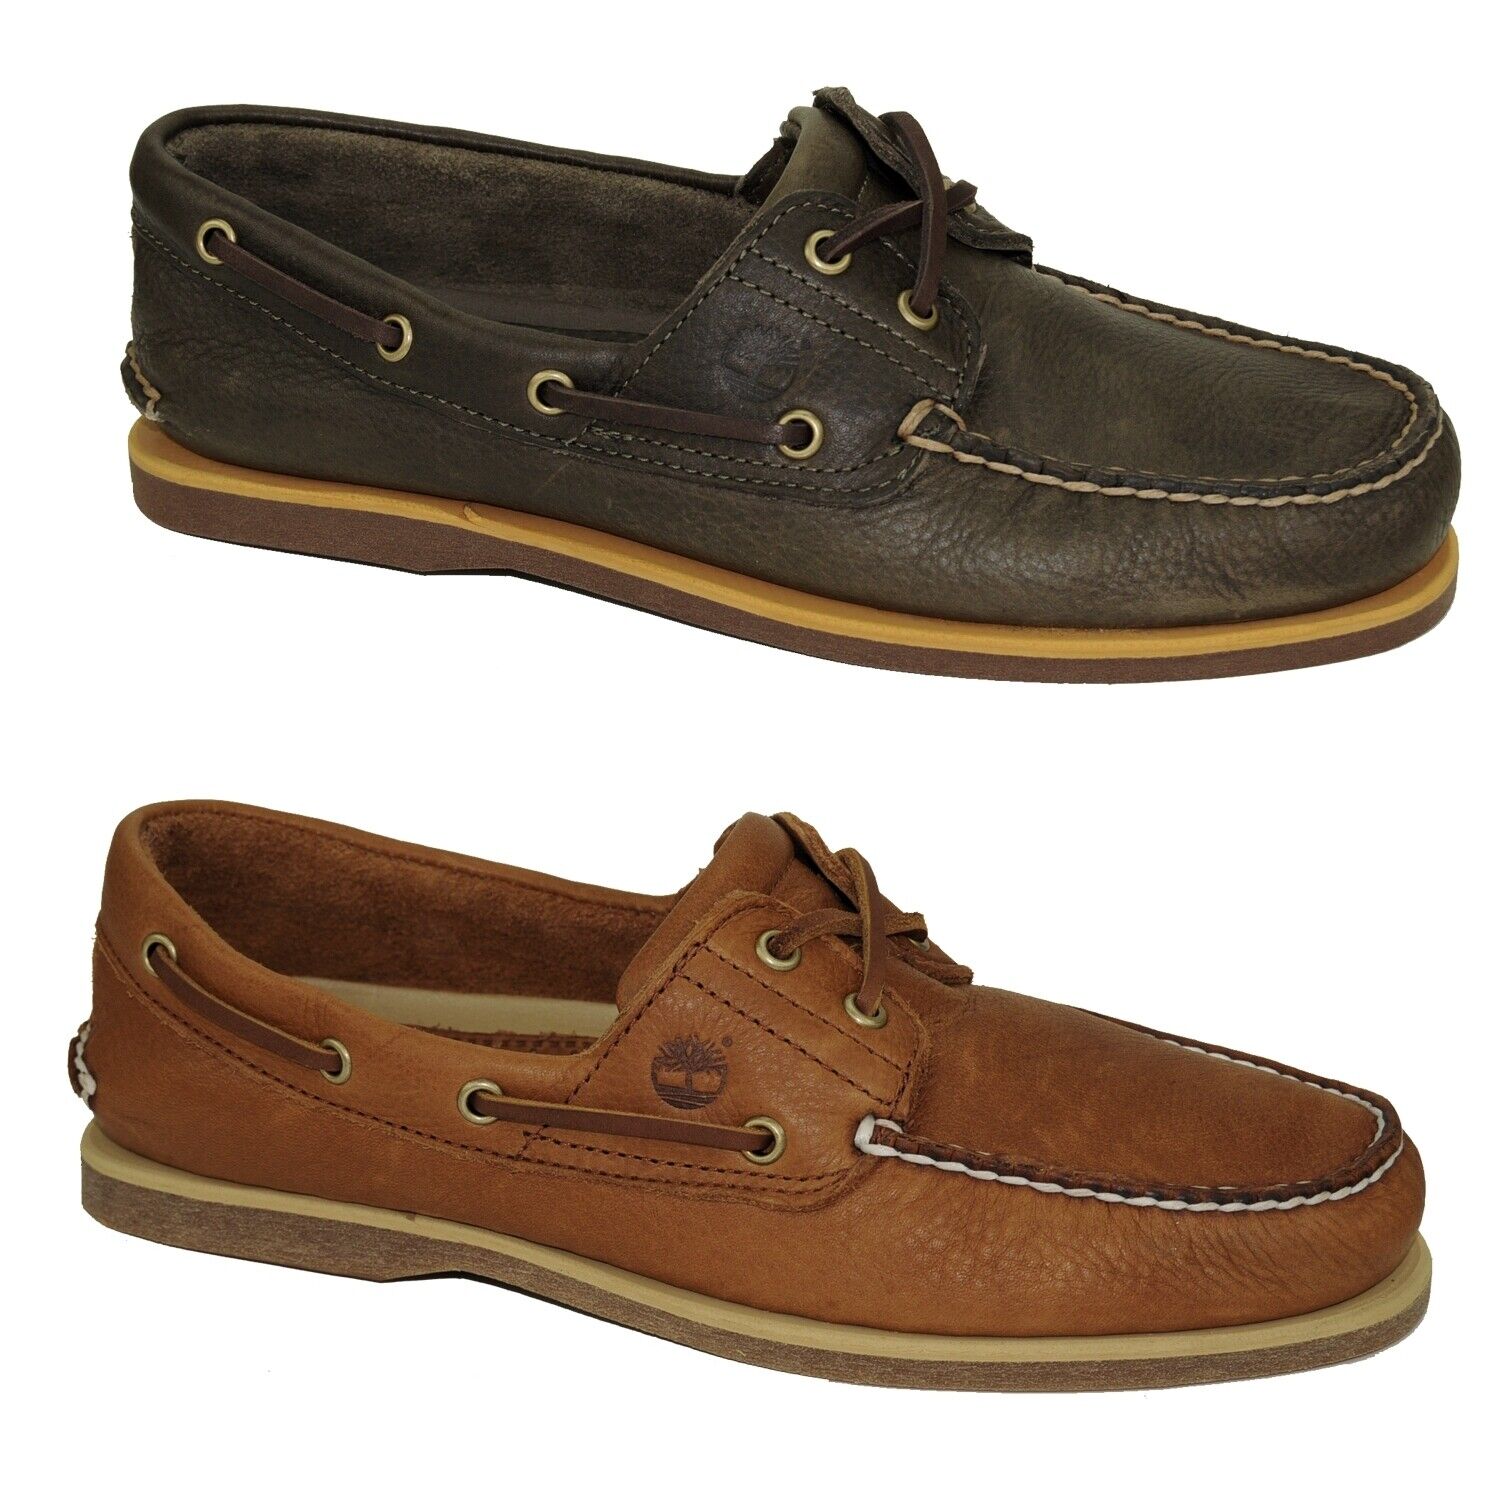 Timberland Classic Boat Shoes 2-Eye Deckschuhe Segelschuhe Herren Schuhe Modell- Farbe A2AFC - Olive Schuhgröße EUR 44 US 10